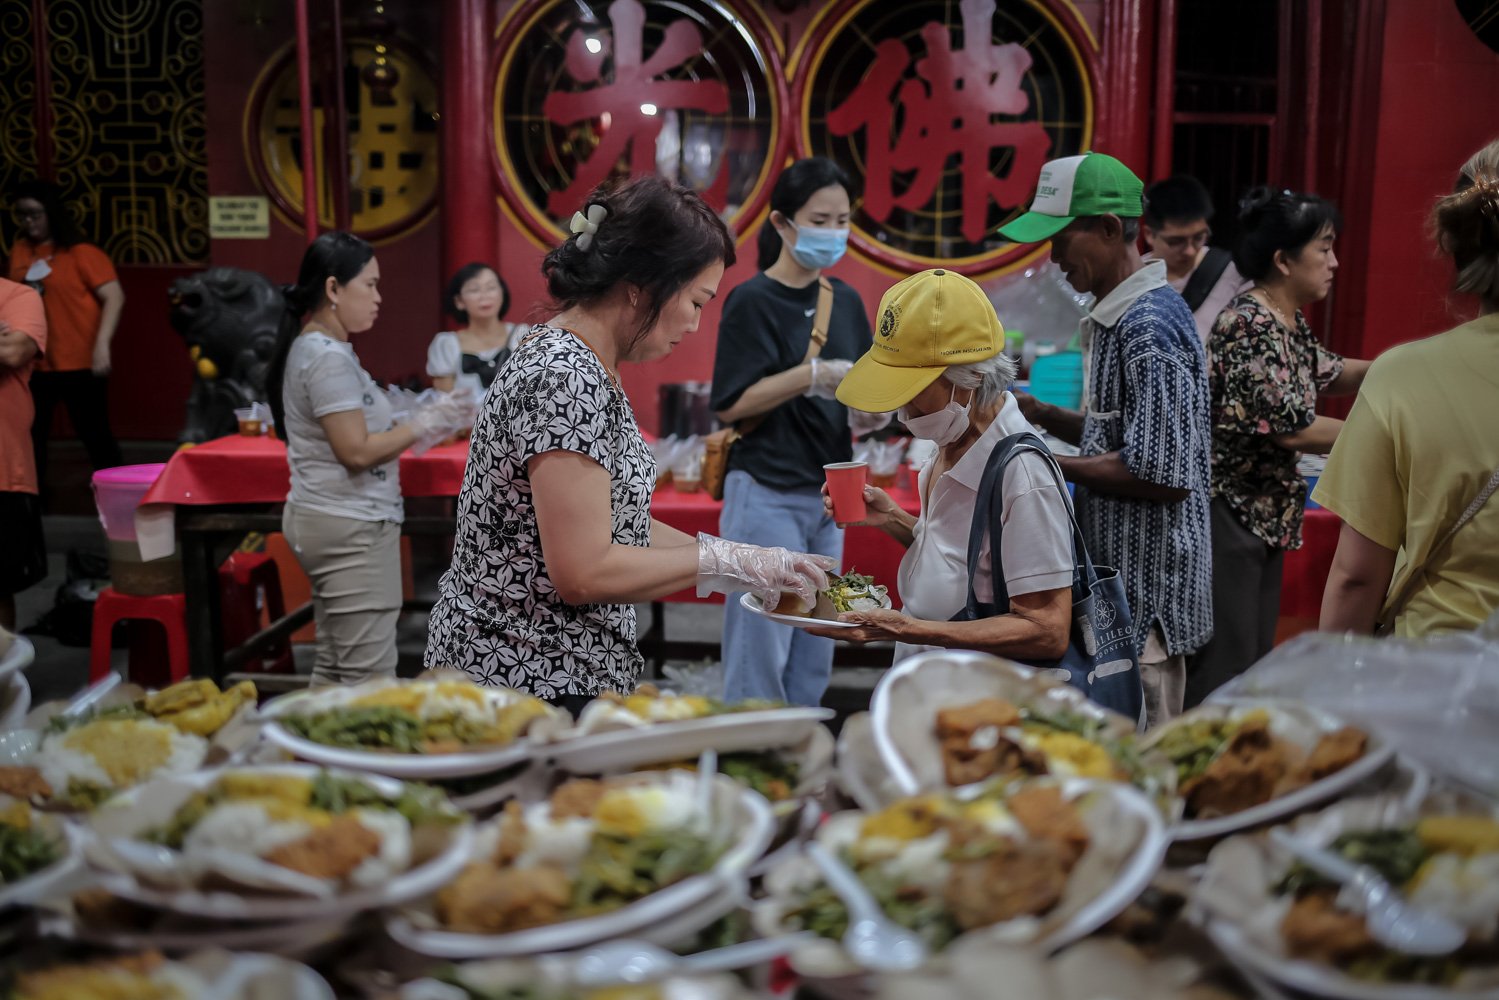 Pengurus vihara membagikan makanan berbuka puasa untuk warga di Vihara Dharma Bakti, Glodok, Jakarta, Rabu (29/3). Sebanyak 300 porsi makanan disediakan oleh pengurus Vihara Dharma Bakti untuk berbuka puasa bagi warga sekitar sebagai ajang mempererat persaudaraan umat beragama pada bulan Ramadan.